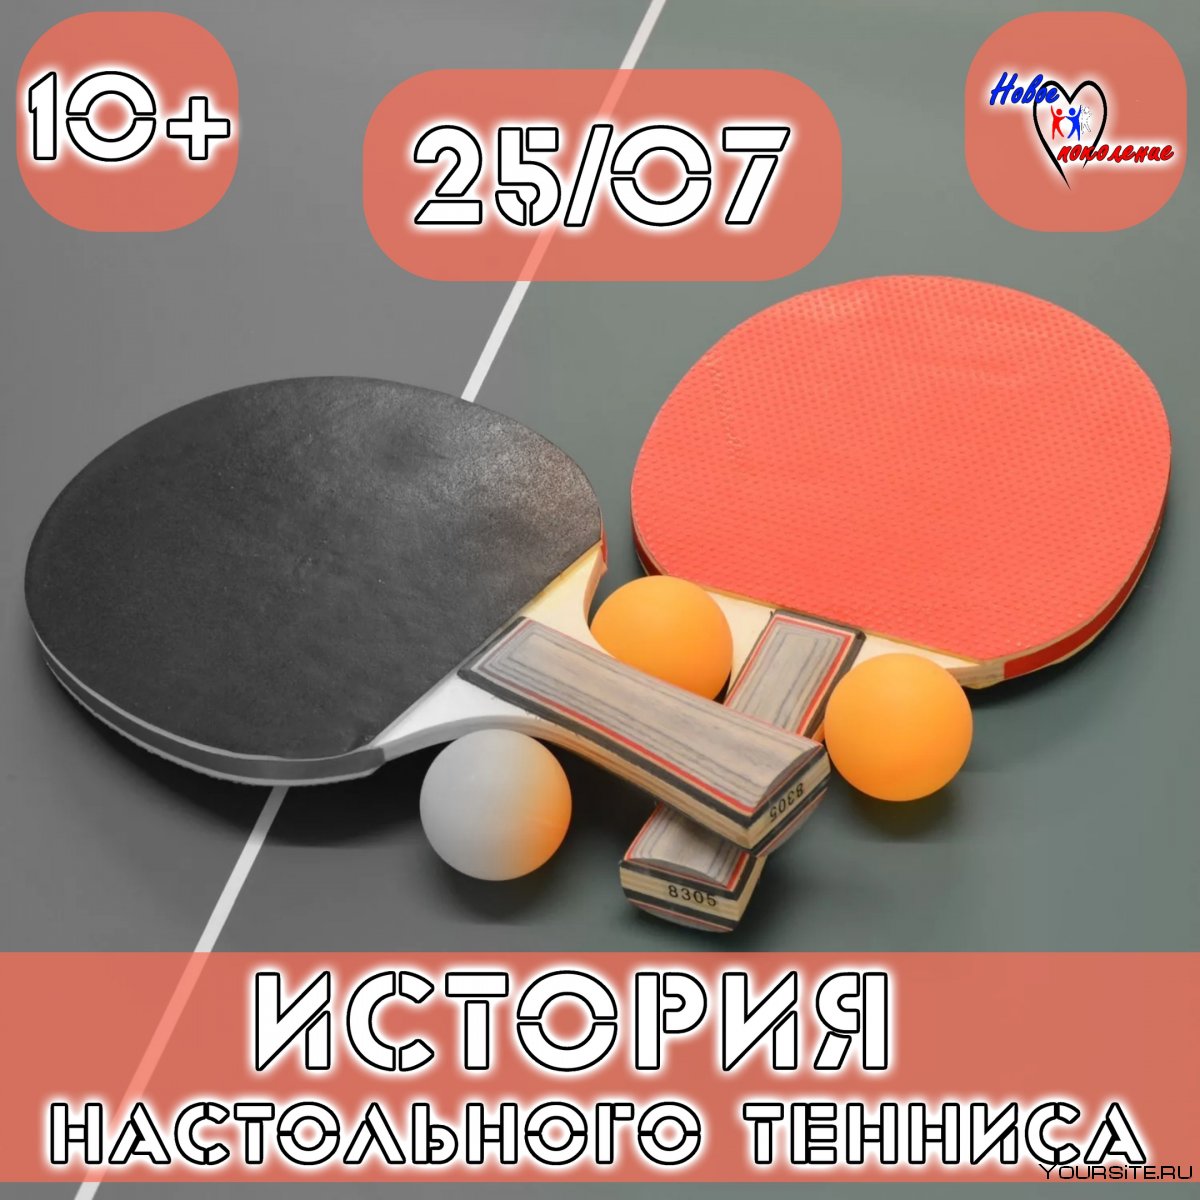 Настольный теннис 706 470